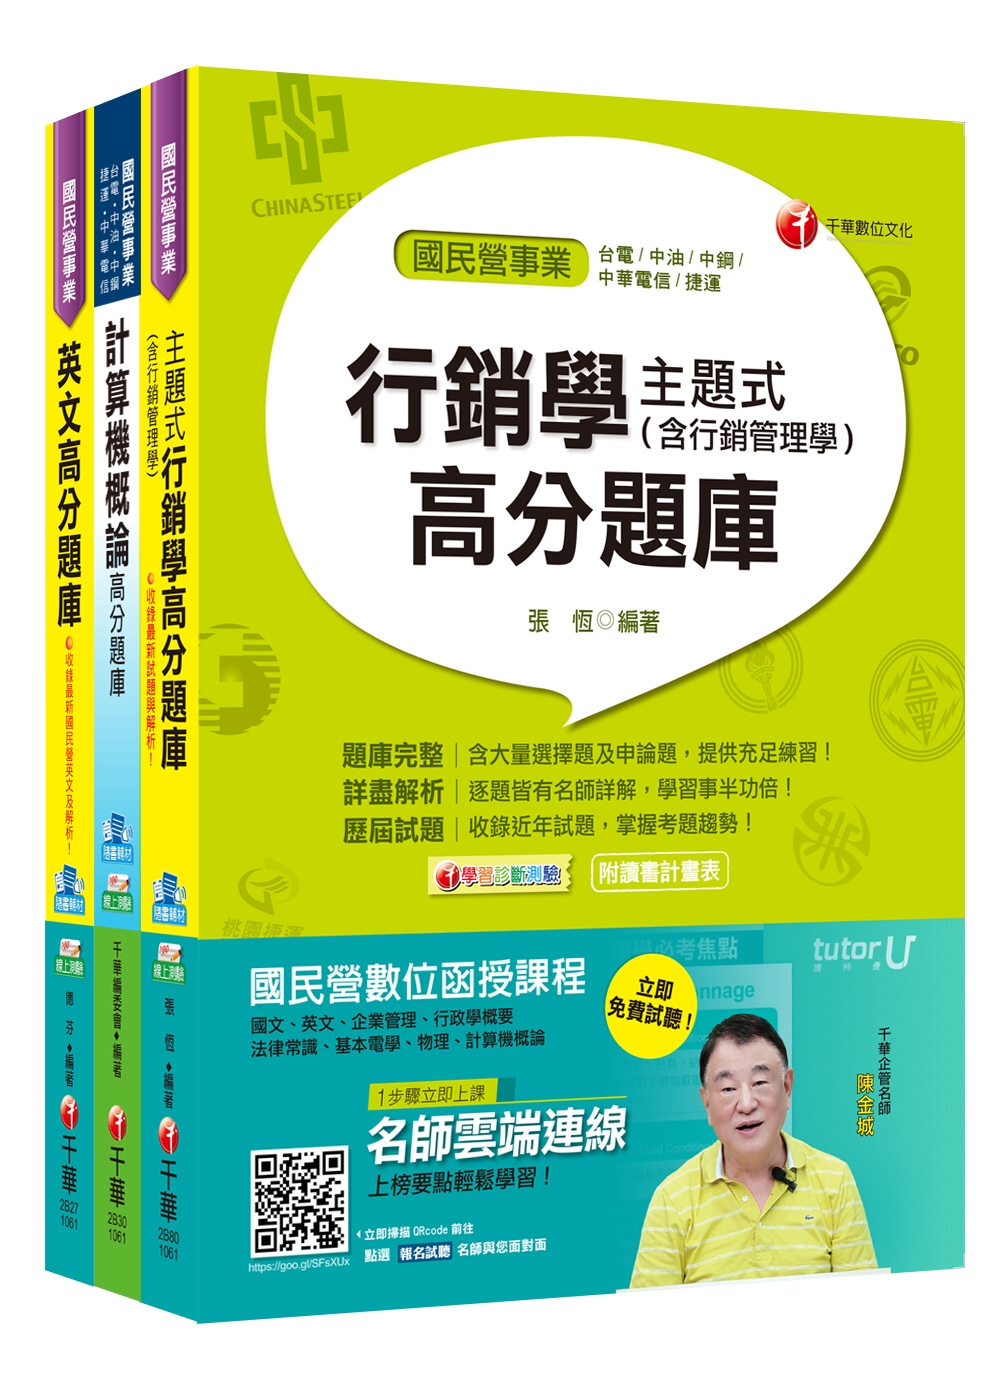 106年中華電信從業人員(基層專員)招考《業務類專業職(四)第一類專員 K8801》題庫版套書